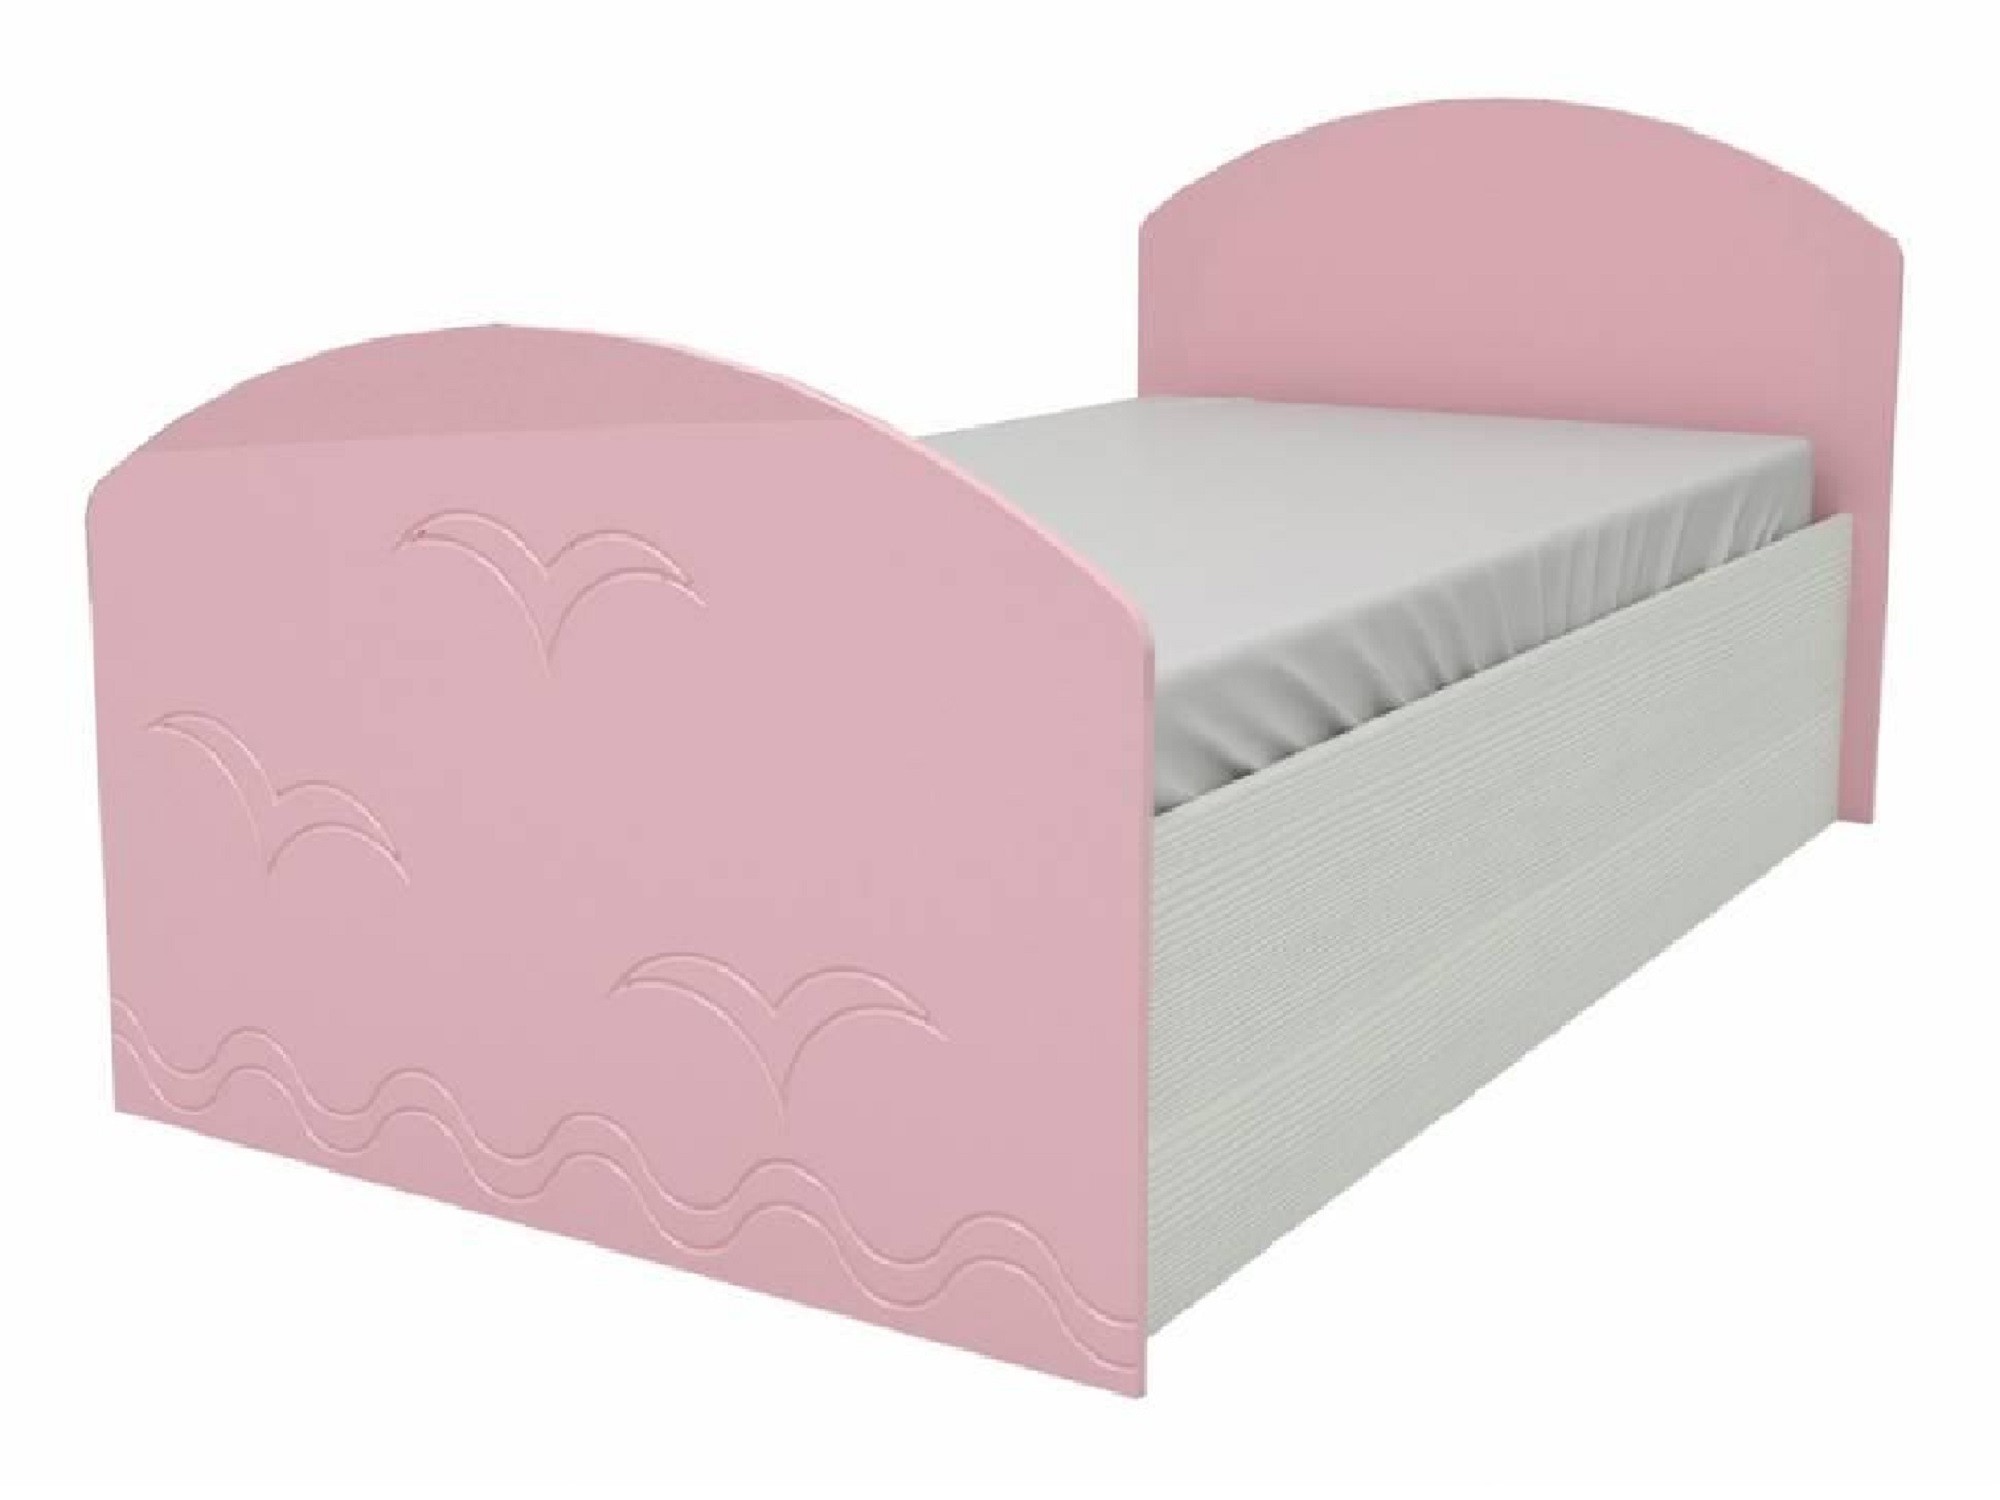 Юниор-2 Детская кровать 80, металлик (Розовый металлик, Дуб белёный) Дуб белёный, МДФ, ЛДСП юниор 2 детская кровать 80 металлик розовый металлик дуб белёный дуб белёный мдф лдсп